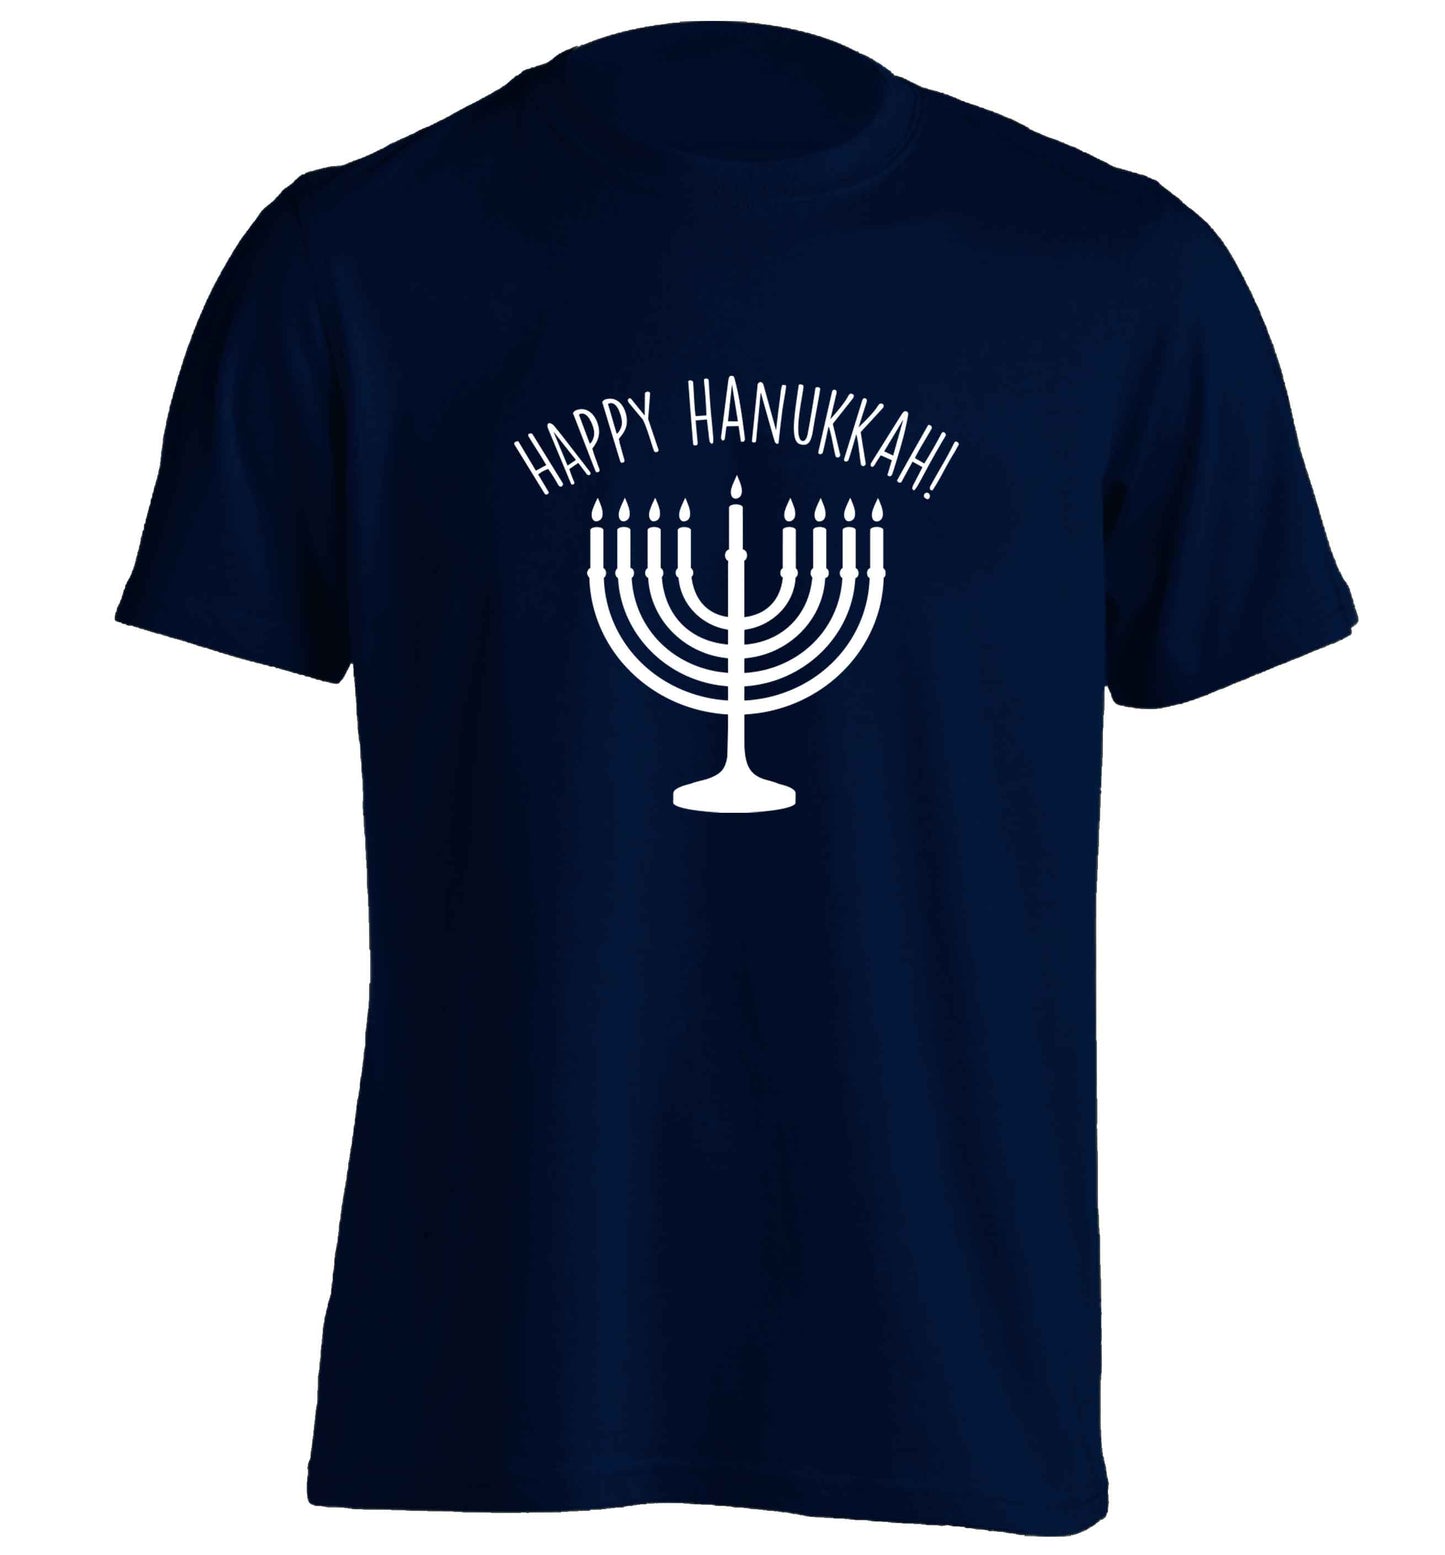 Happy hanukkah adults unisex navy Tshirt 2XL